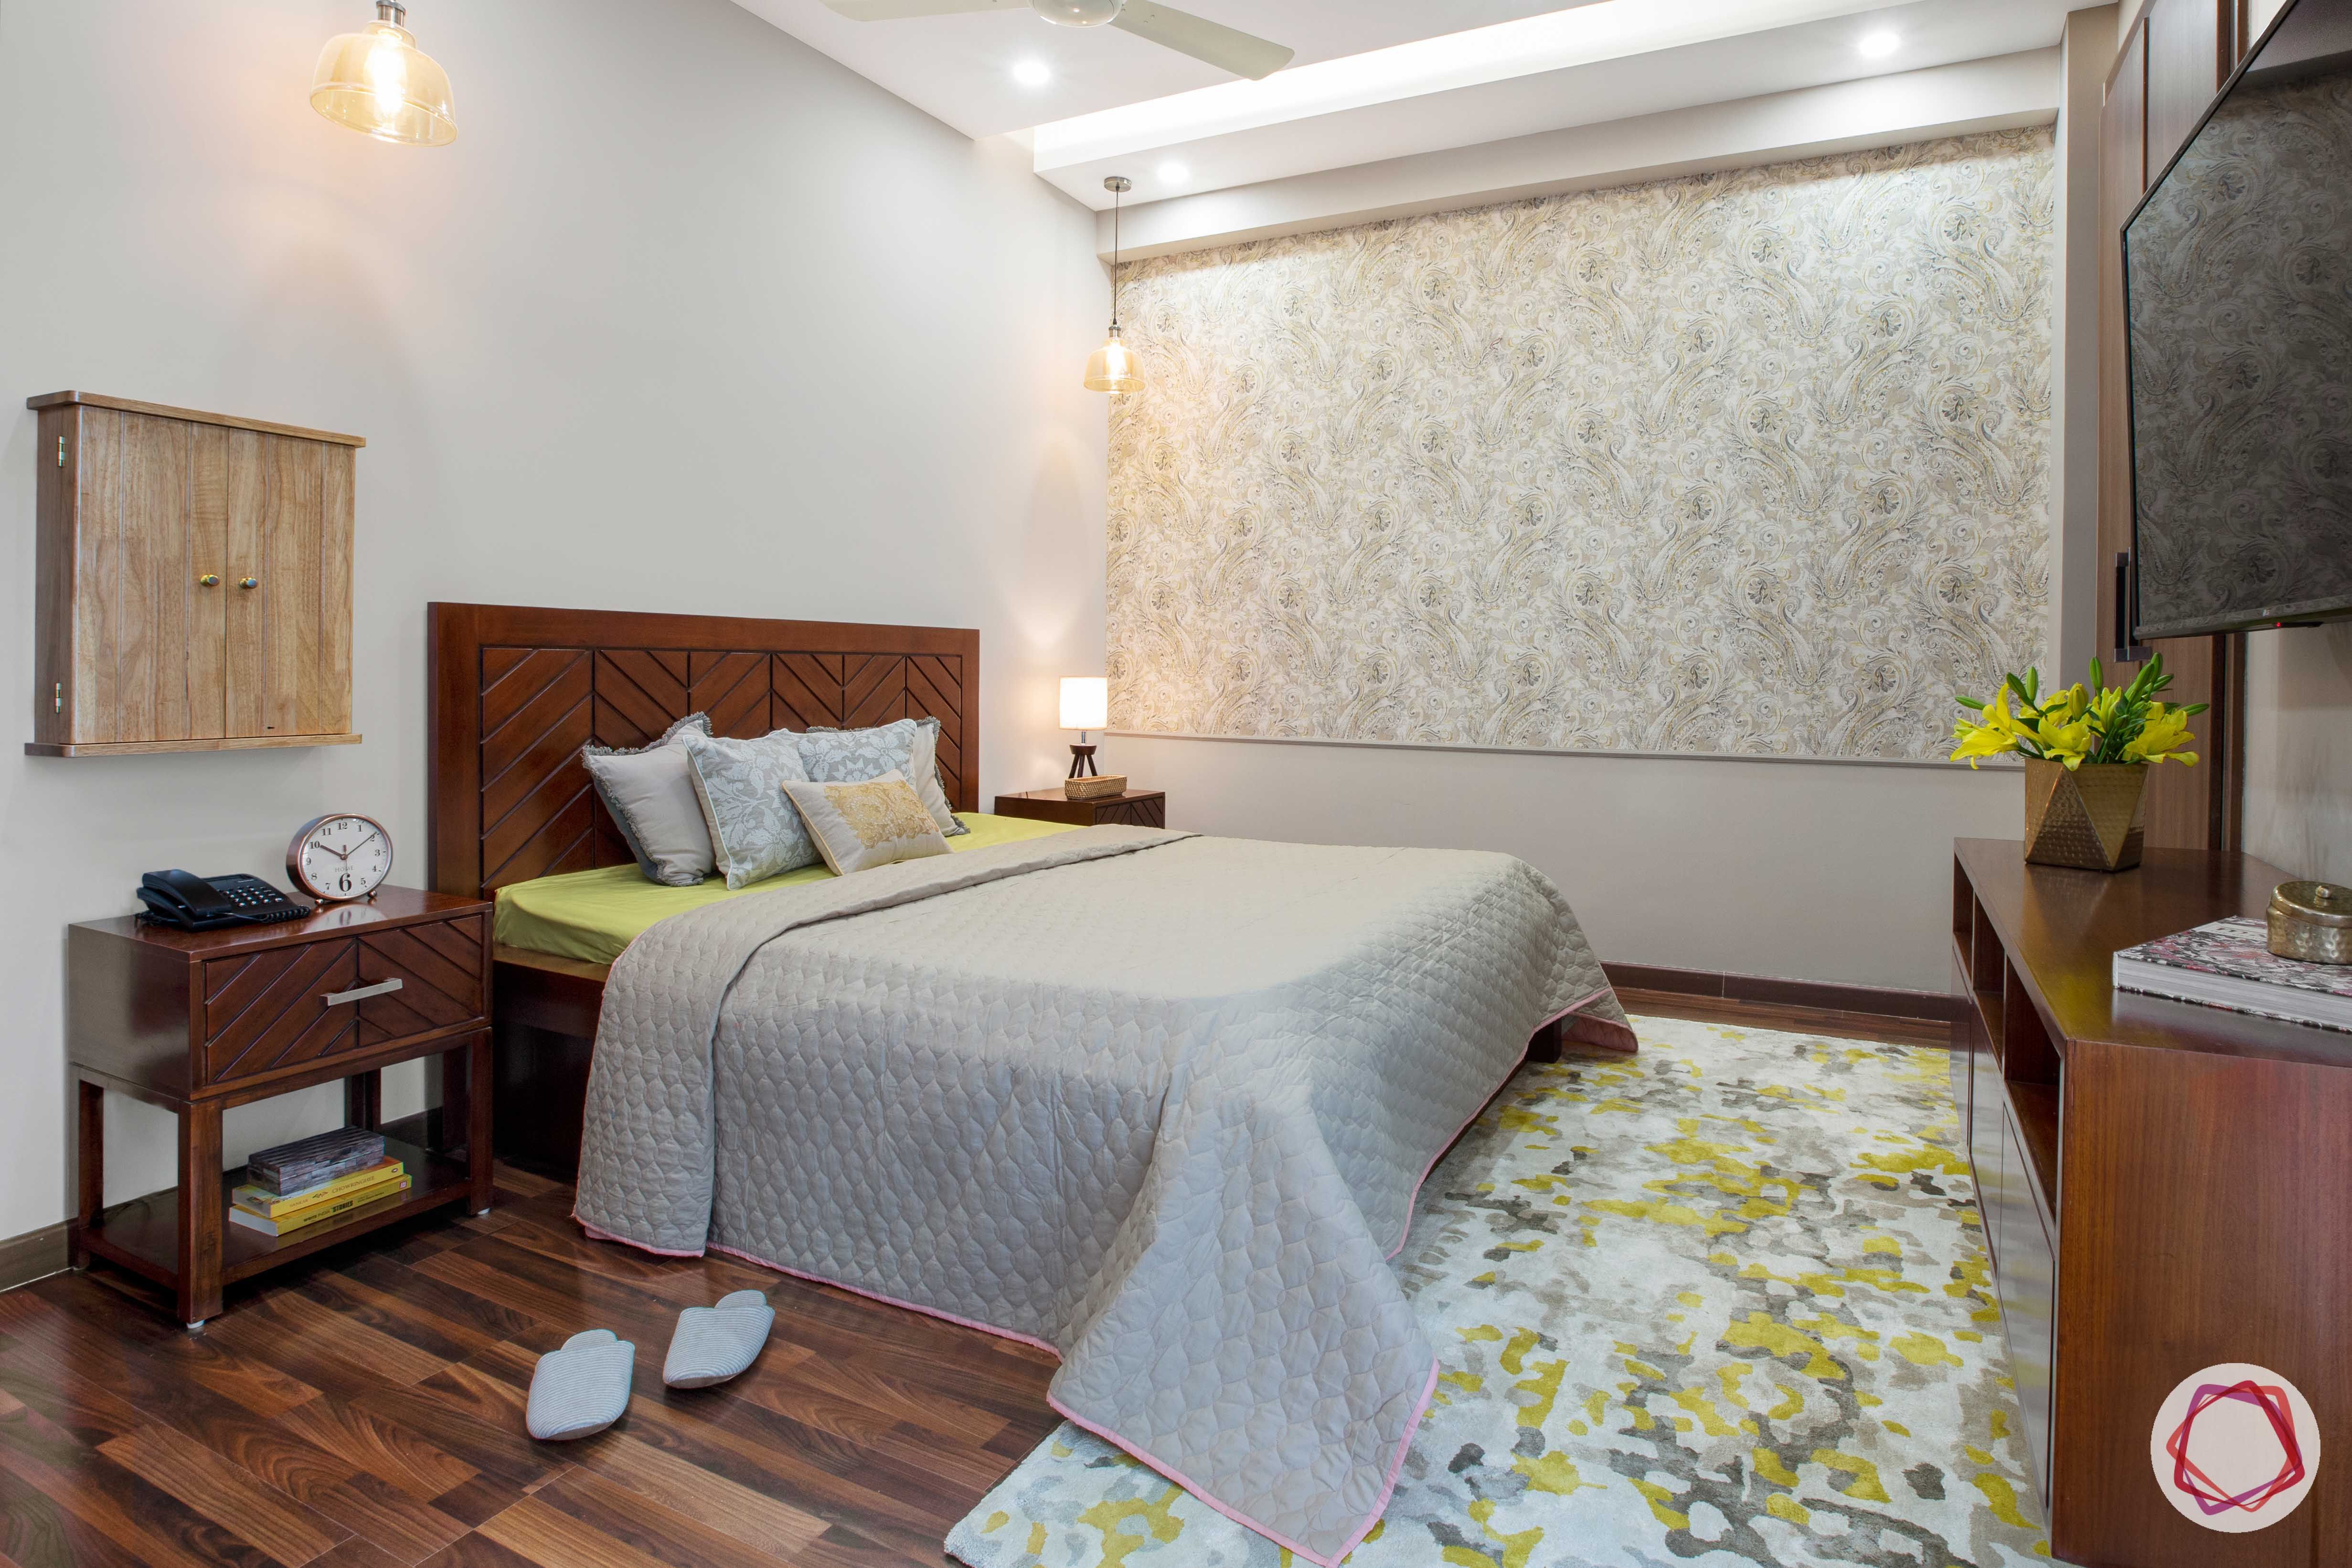 Prateek Stylome-wooden bed designs-floral carper designs